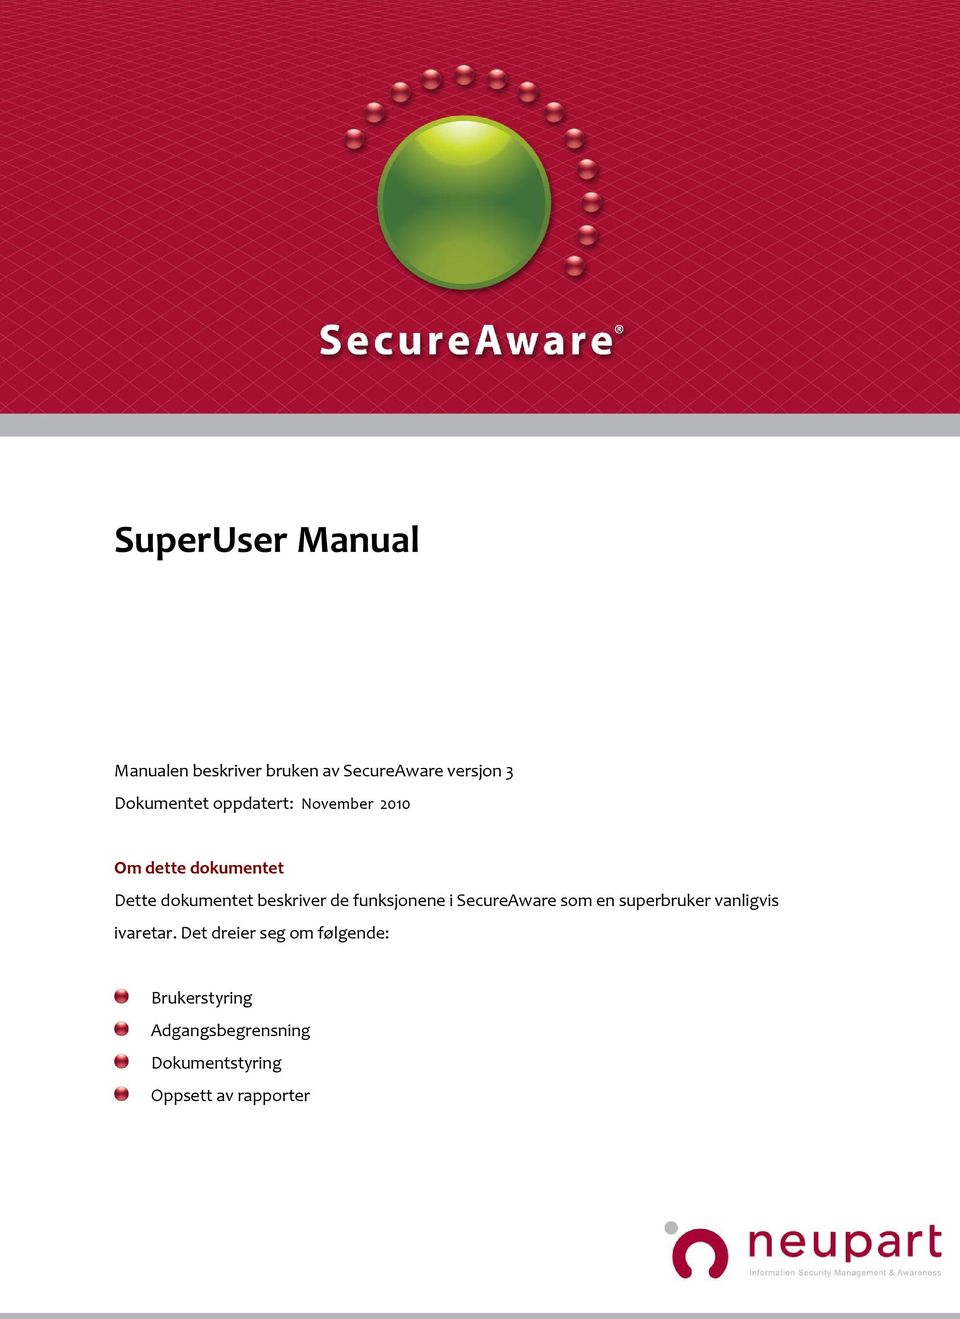 funksjonene i SecureAware som en superbruker vanligvis ivaretar.